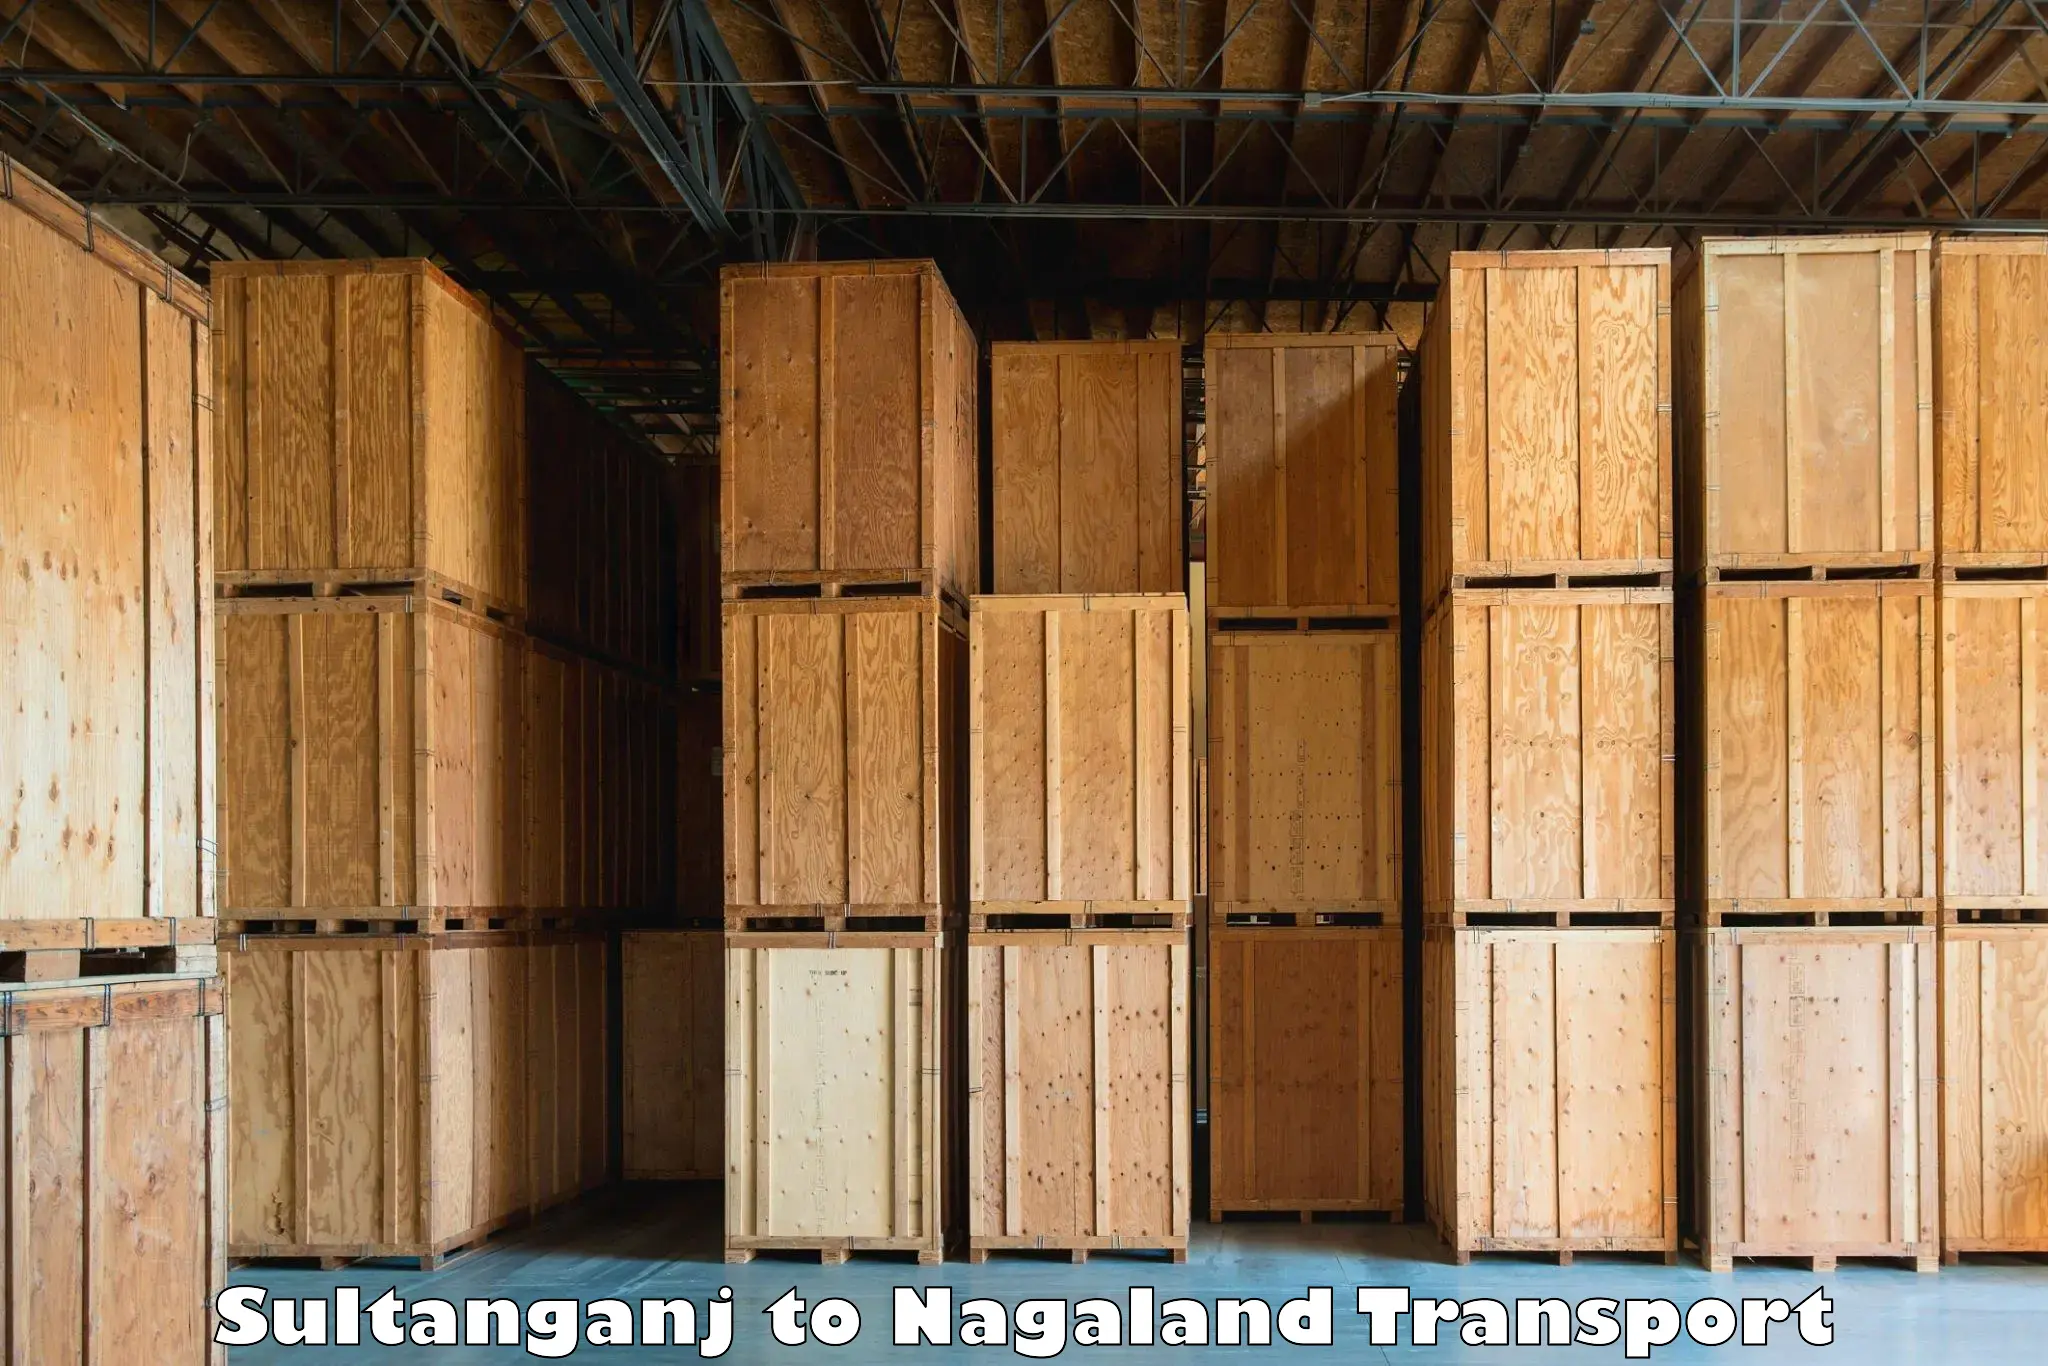 Online transport service Sultanganj to Nagaland